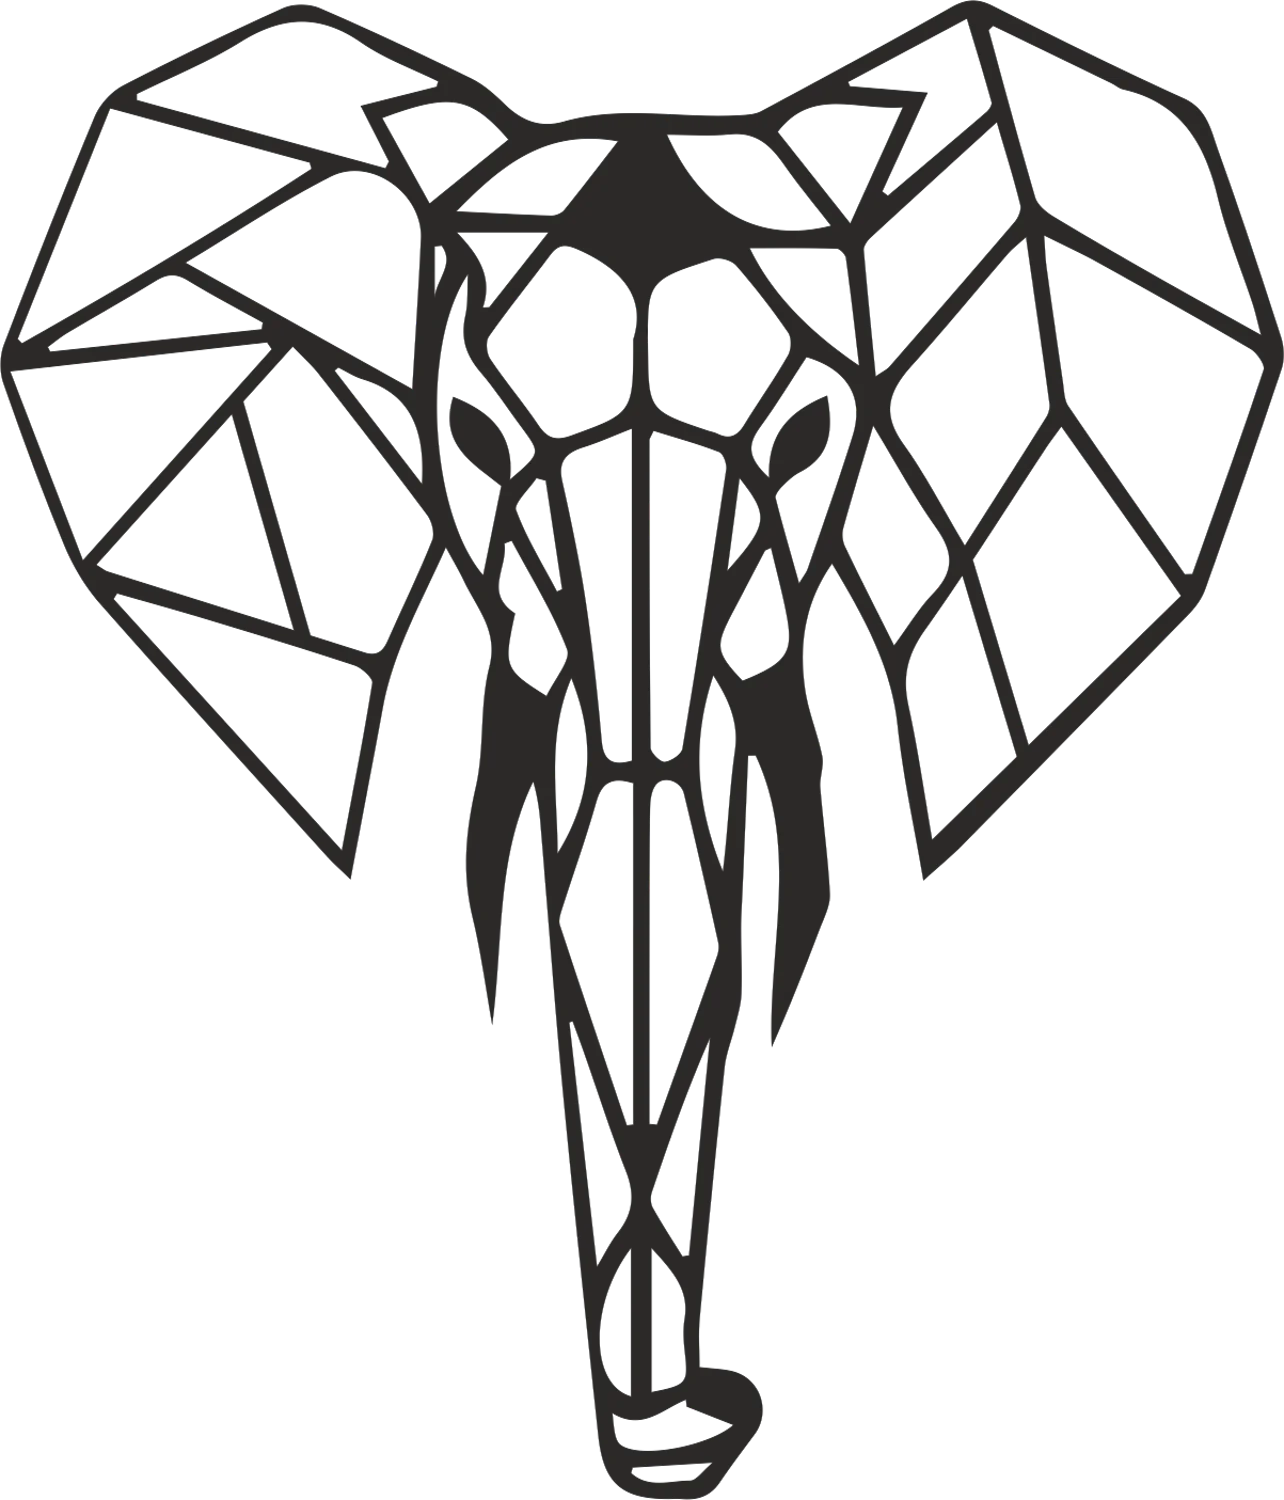 Металлический настенный рисунок в виде слона на Antdecor, 55x90 см, 2" x 35" черный, геометрический и минималистичный металлический настенный арт